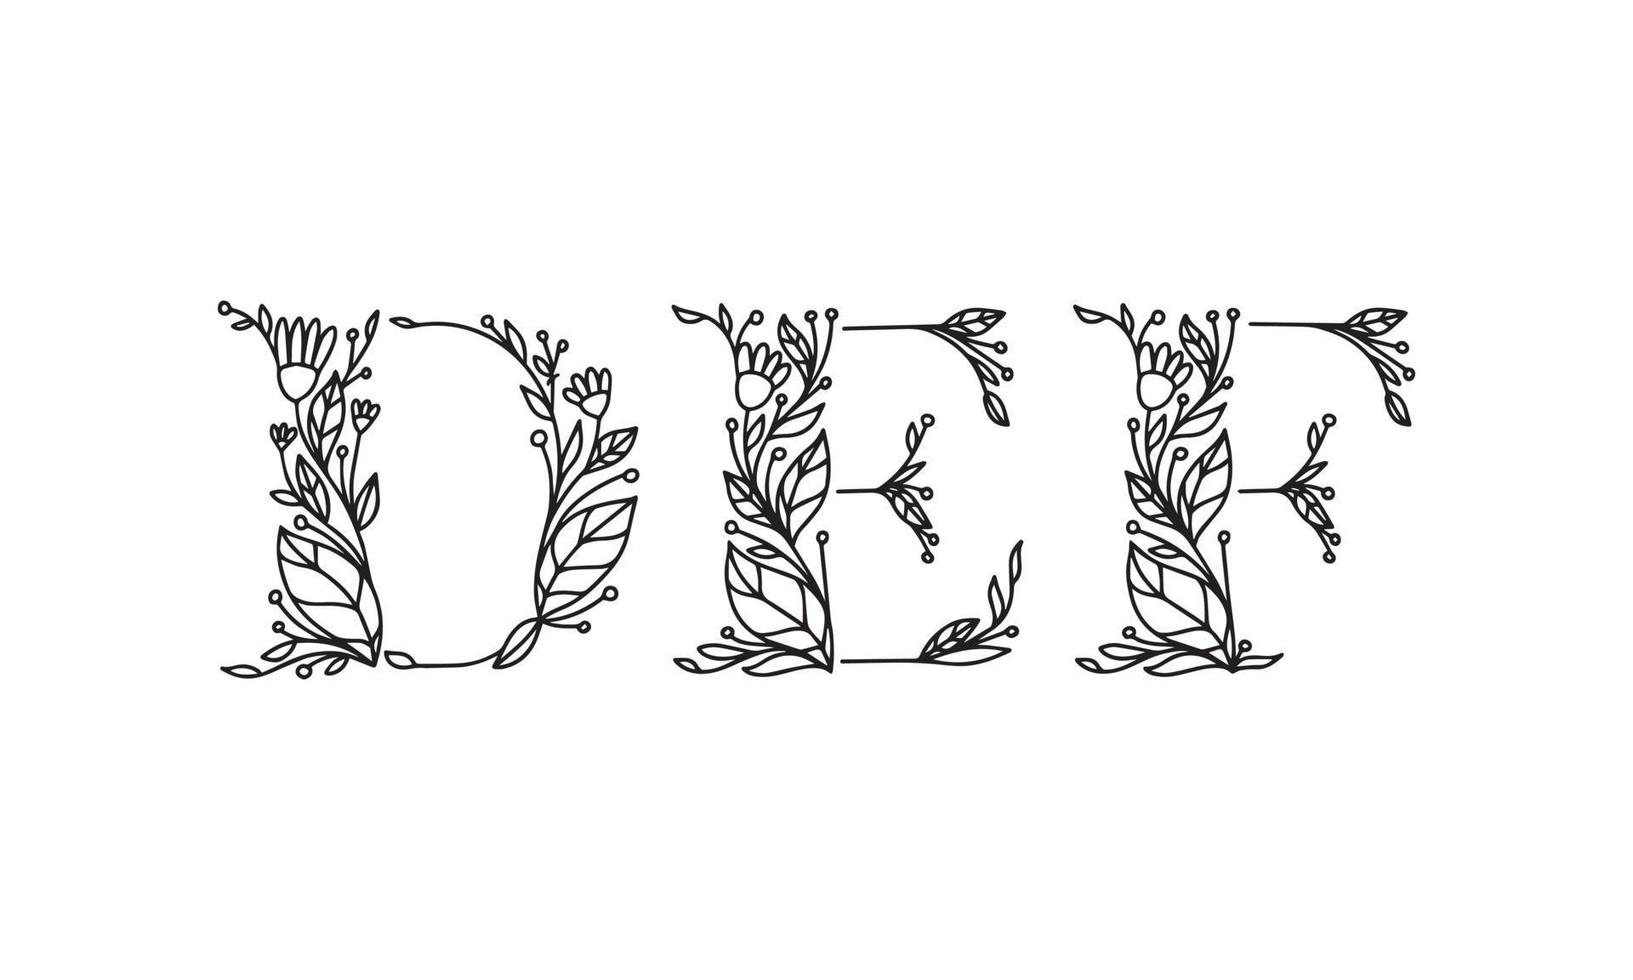 Ilustración floral alfabeto fuente gráfica de vector hecha por plantas de flores y hojas arte lineal dibujado a mano creativo para apariencia de estilo de naturaleza abstracta y natural en una decoración de diseño monocromático único